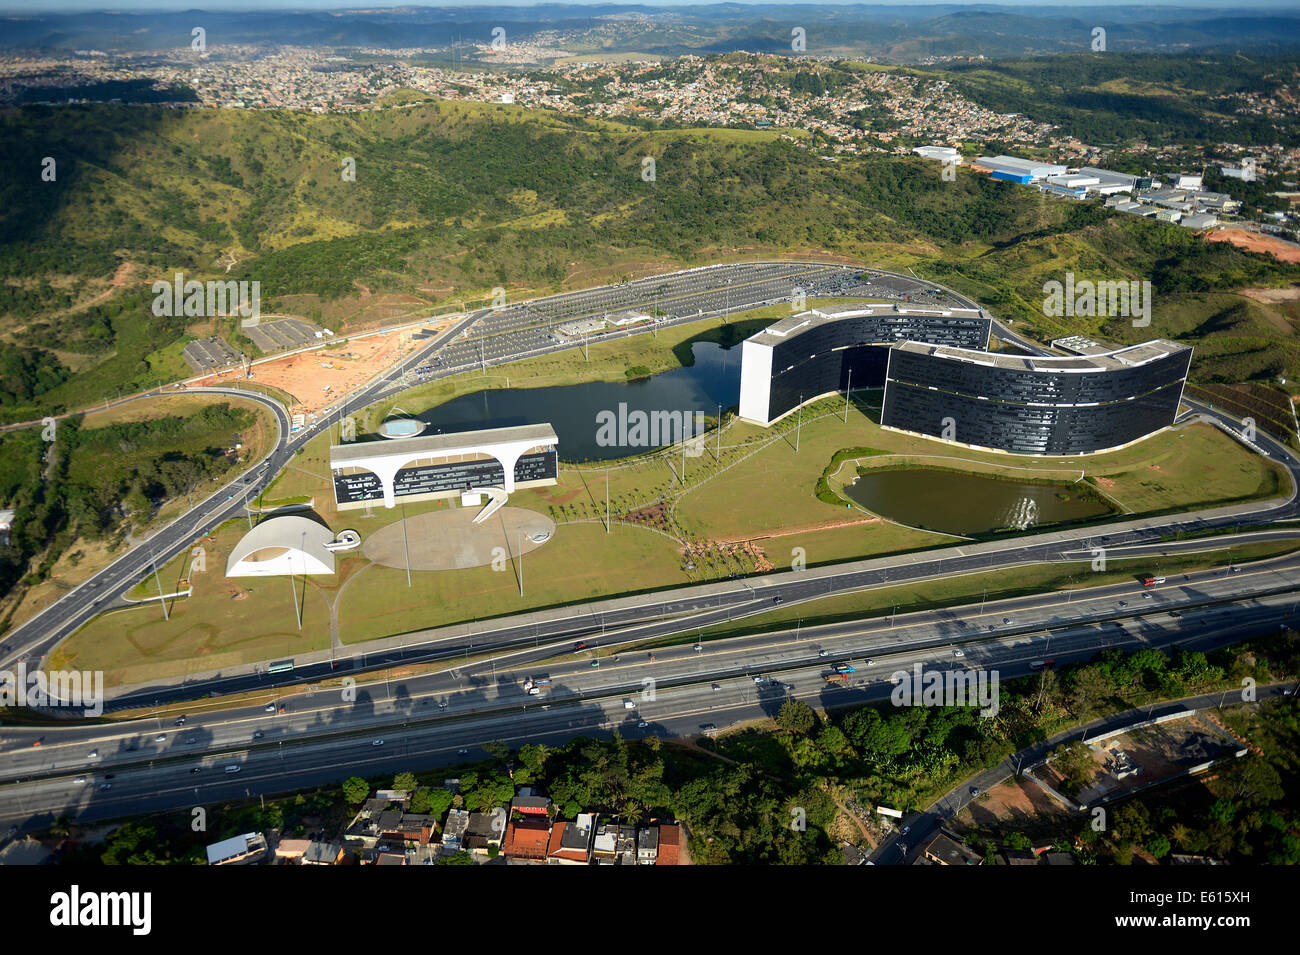 Regional Government Administrative Centre, Cidade Administrativa, architect Oscar Niemeyer, Belo Horizonte, Minas Gerais, Brazil Stock Photo